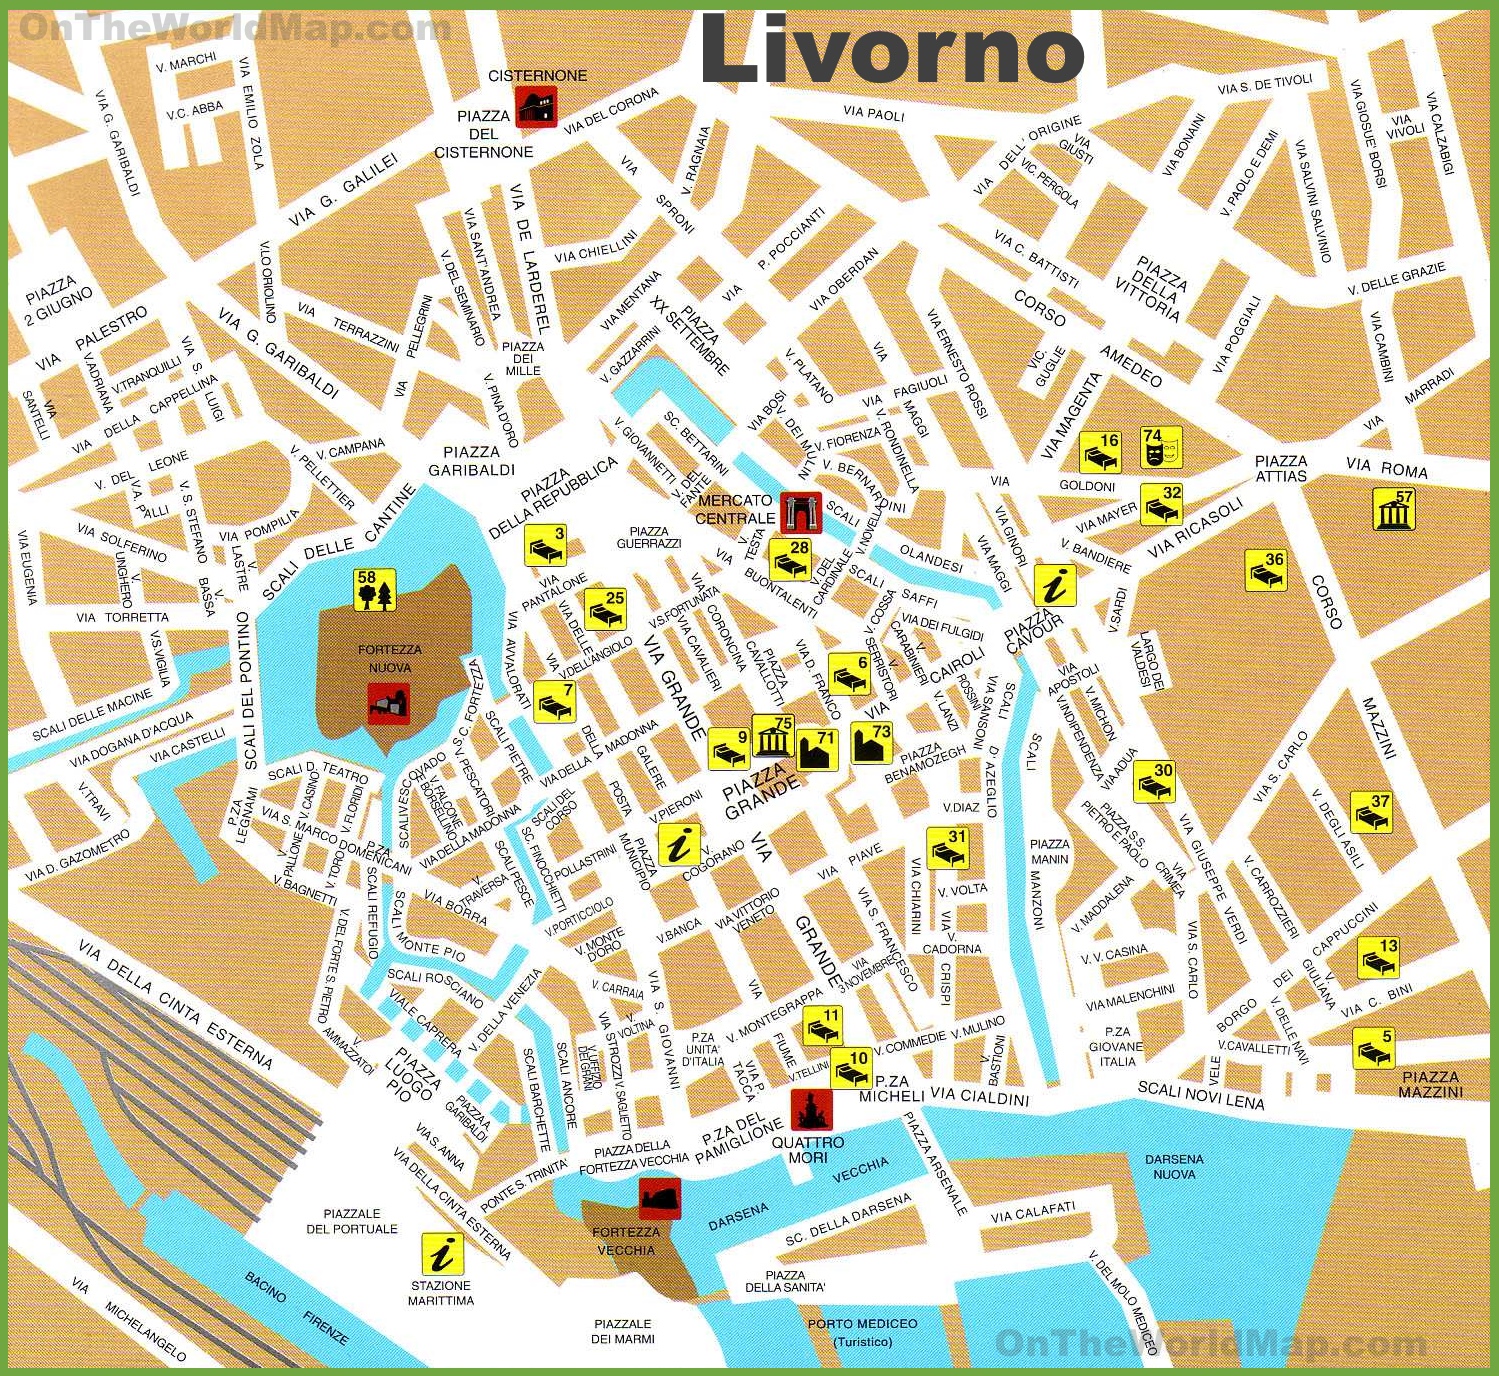 livorno-tourist-map.jpg